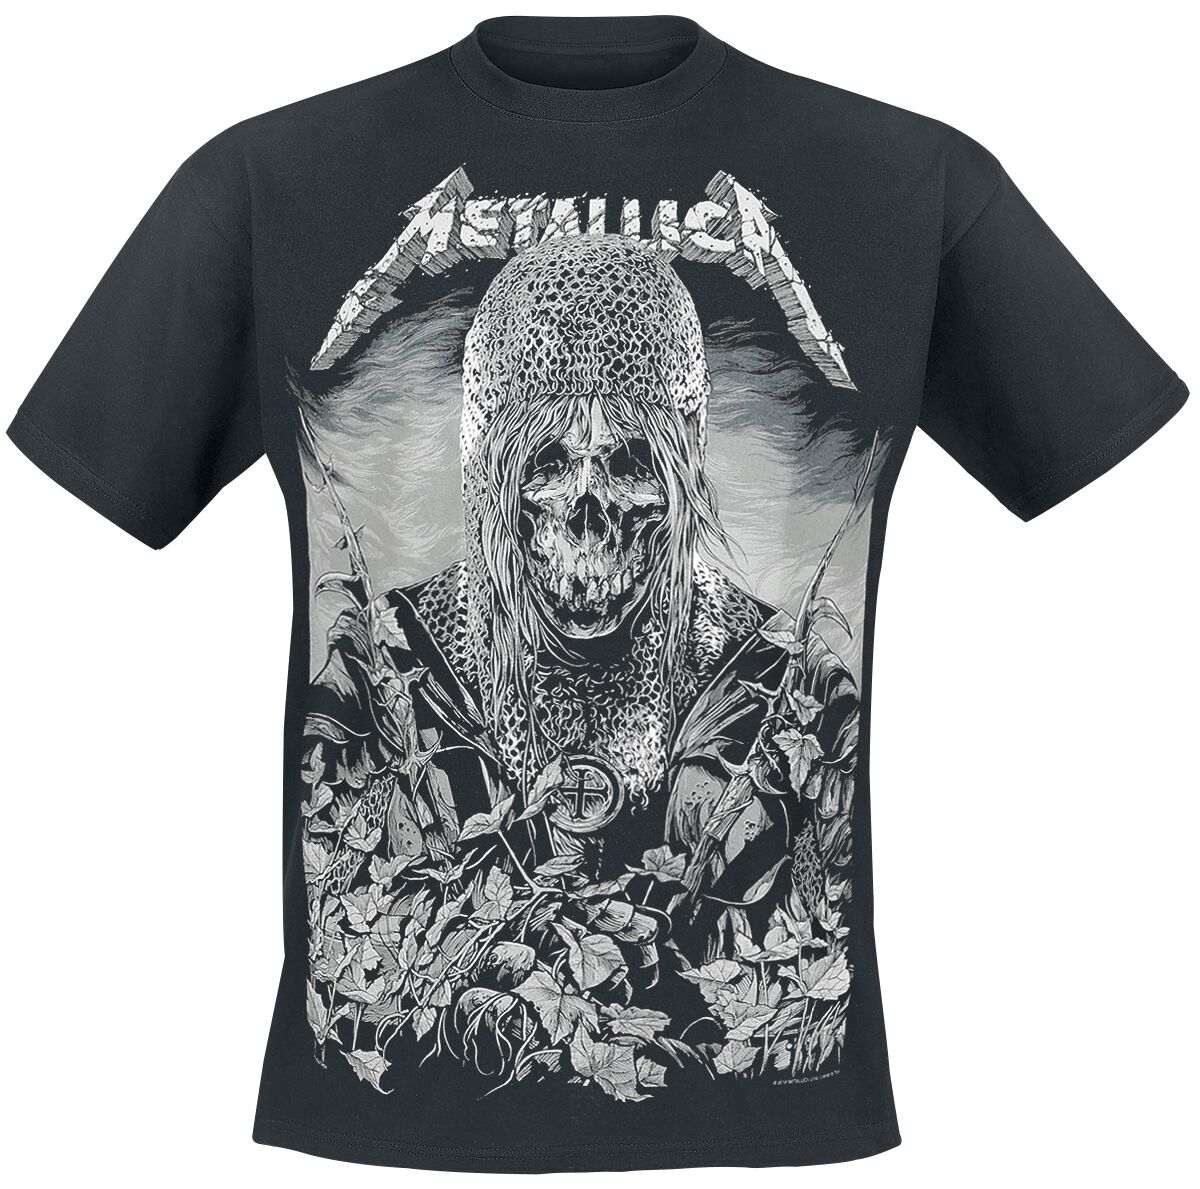 Metallica T-Shirt - Templar - S bis 3XL - für Männer - Größe S - schwarz  - Lizenziertes Merchandise!